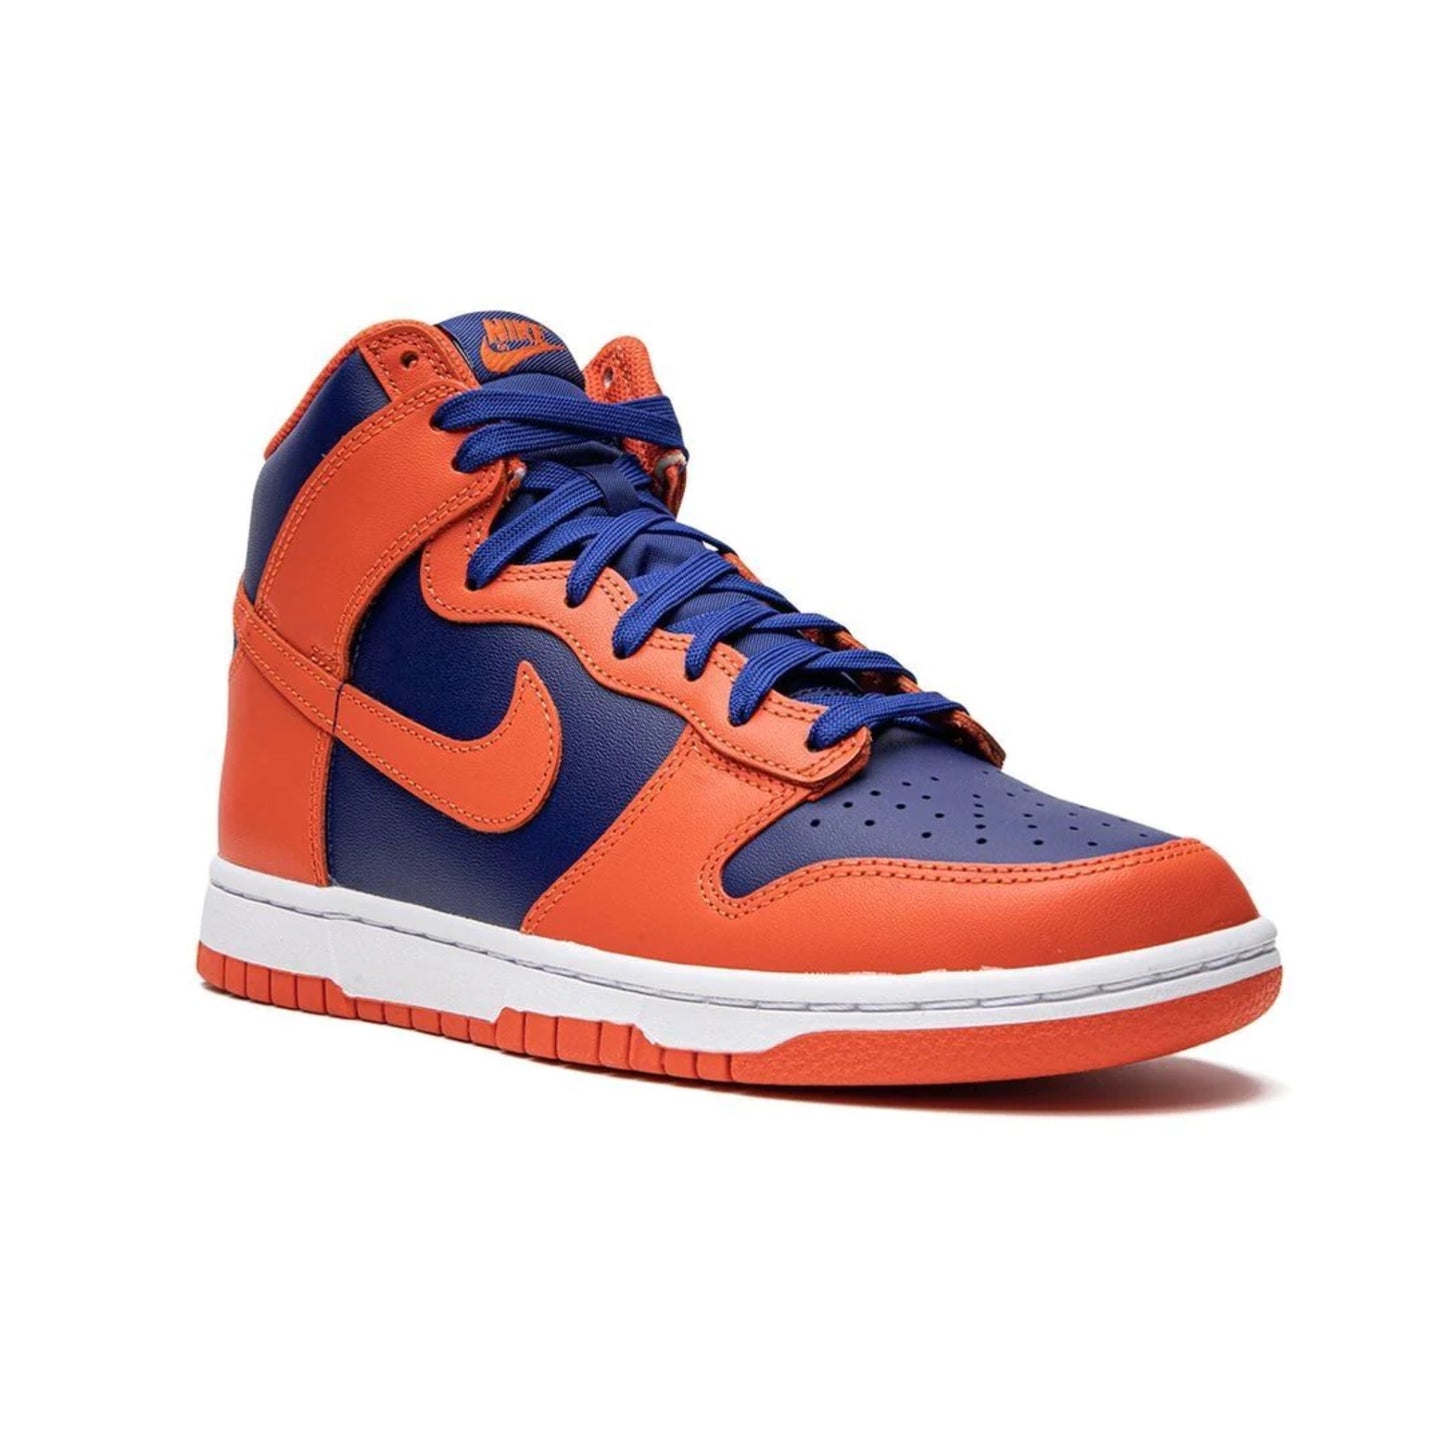 Nike Dunk High Knicks Orange Deep Royal Blue White Orange